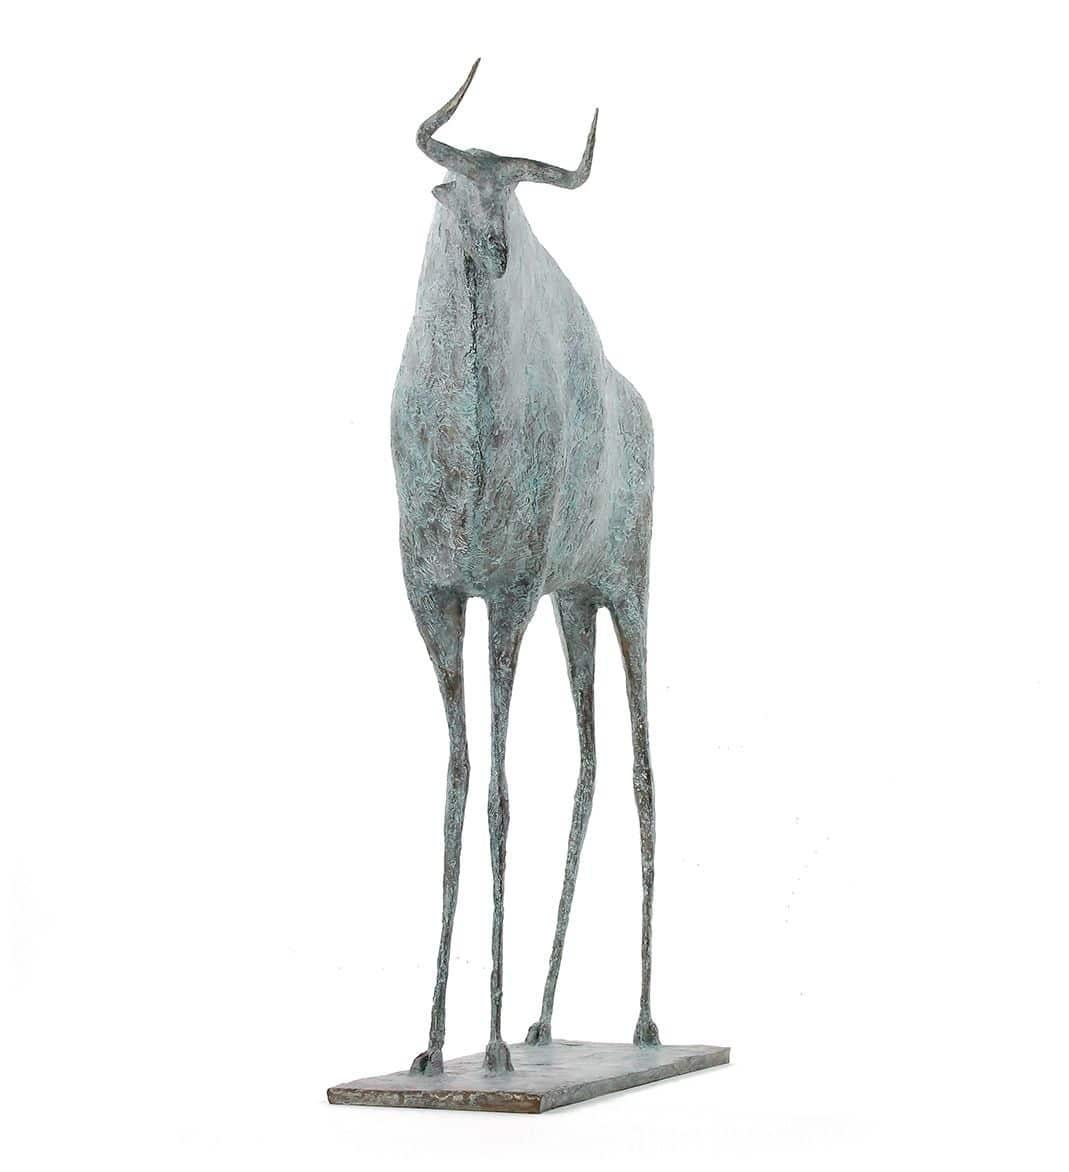 Stier VIII ist eine Bronzeskulptur des französischen zeitgenössischen Künstlers Pierre Yermia mit den Maßen 73 × 58 × 17 cm (28,7 × 22,8 × 6,7 in). 
Die Skulptur ist signiert und nummeriert, gehört zu einer limitierten Auflage von 8 Exemplaren + 4